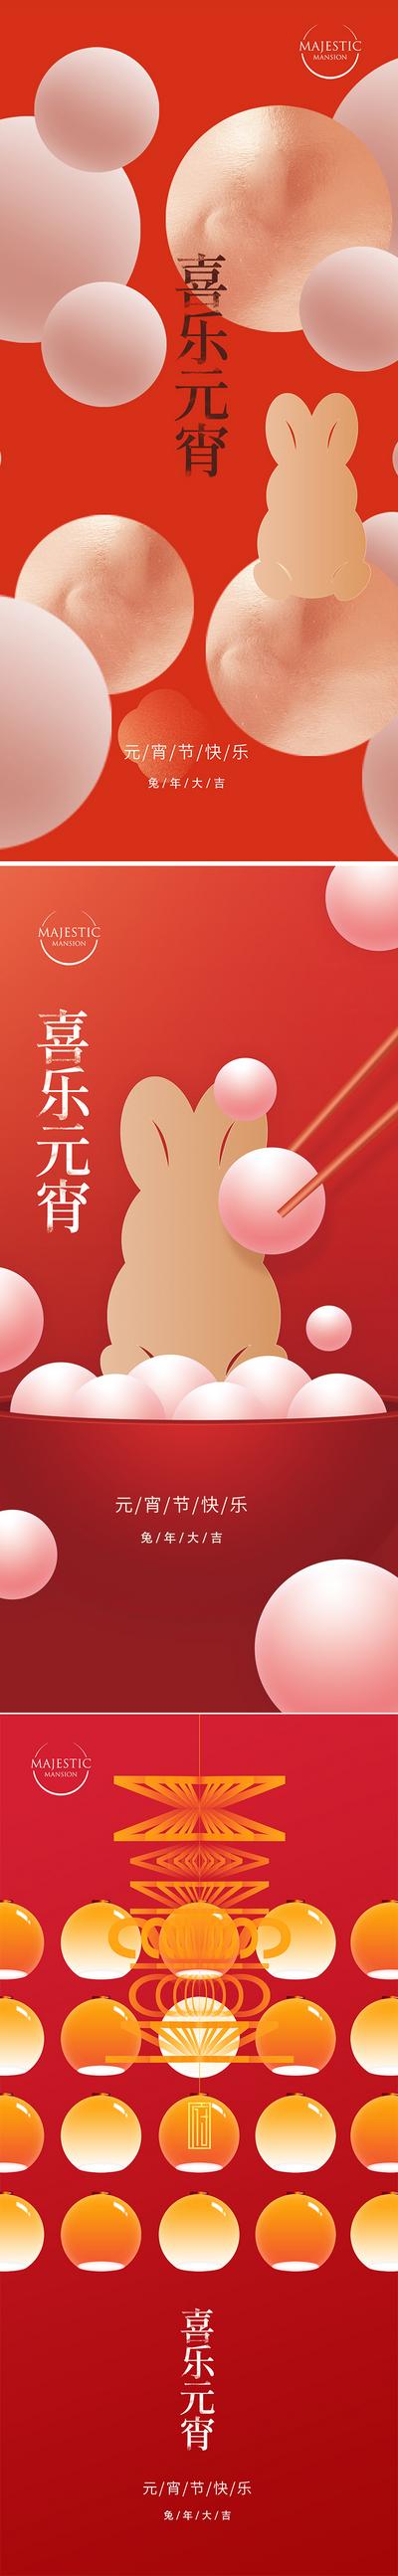 南门网 海报 中国传统节日 元宵节 汤圆 兔子 灯笼 图形 系列